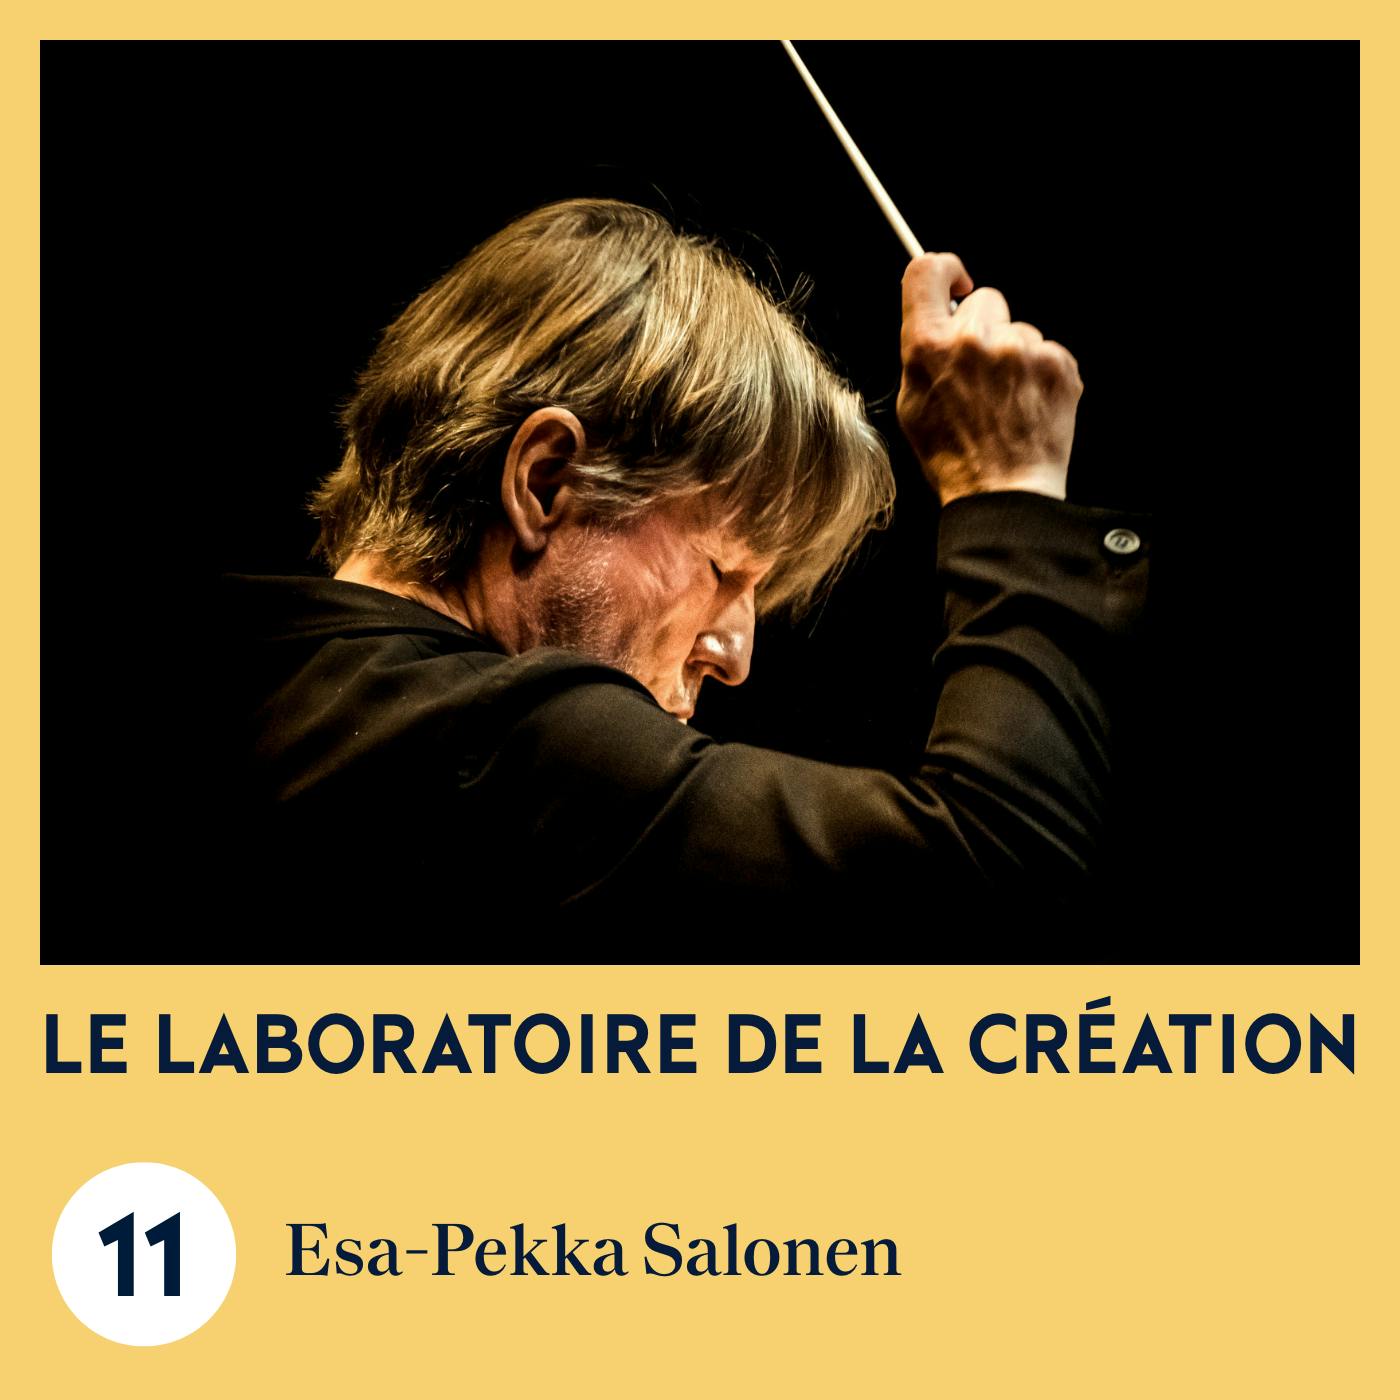 Esa-Pekka Salonen, l'homme-orchestre | Le Laboratoire de la création #11